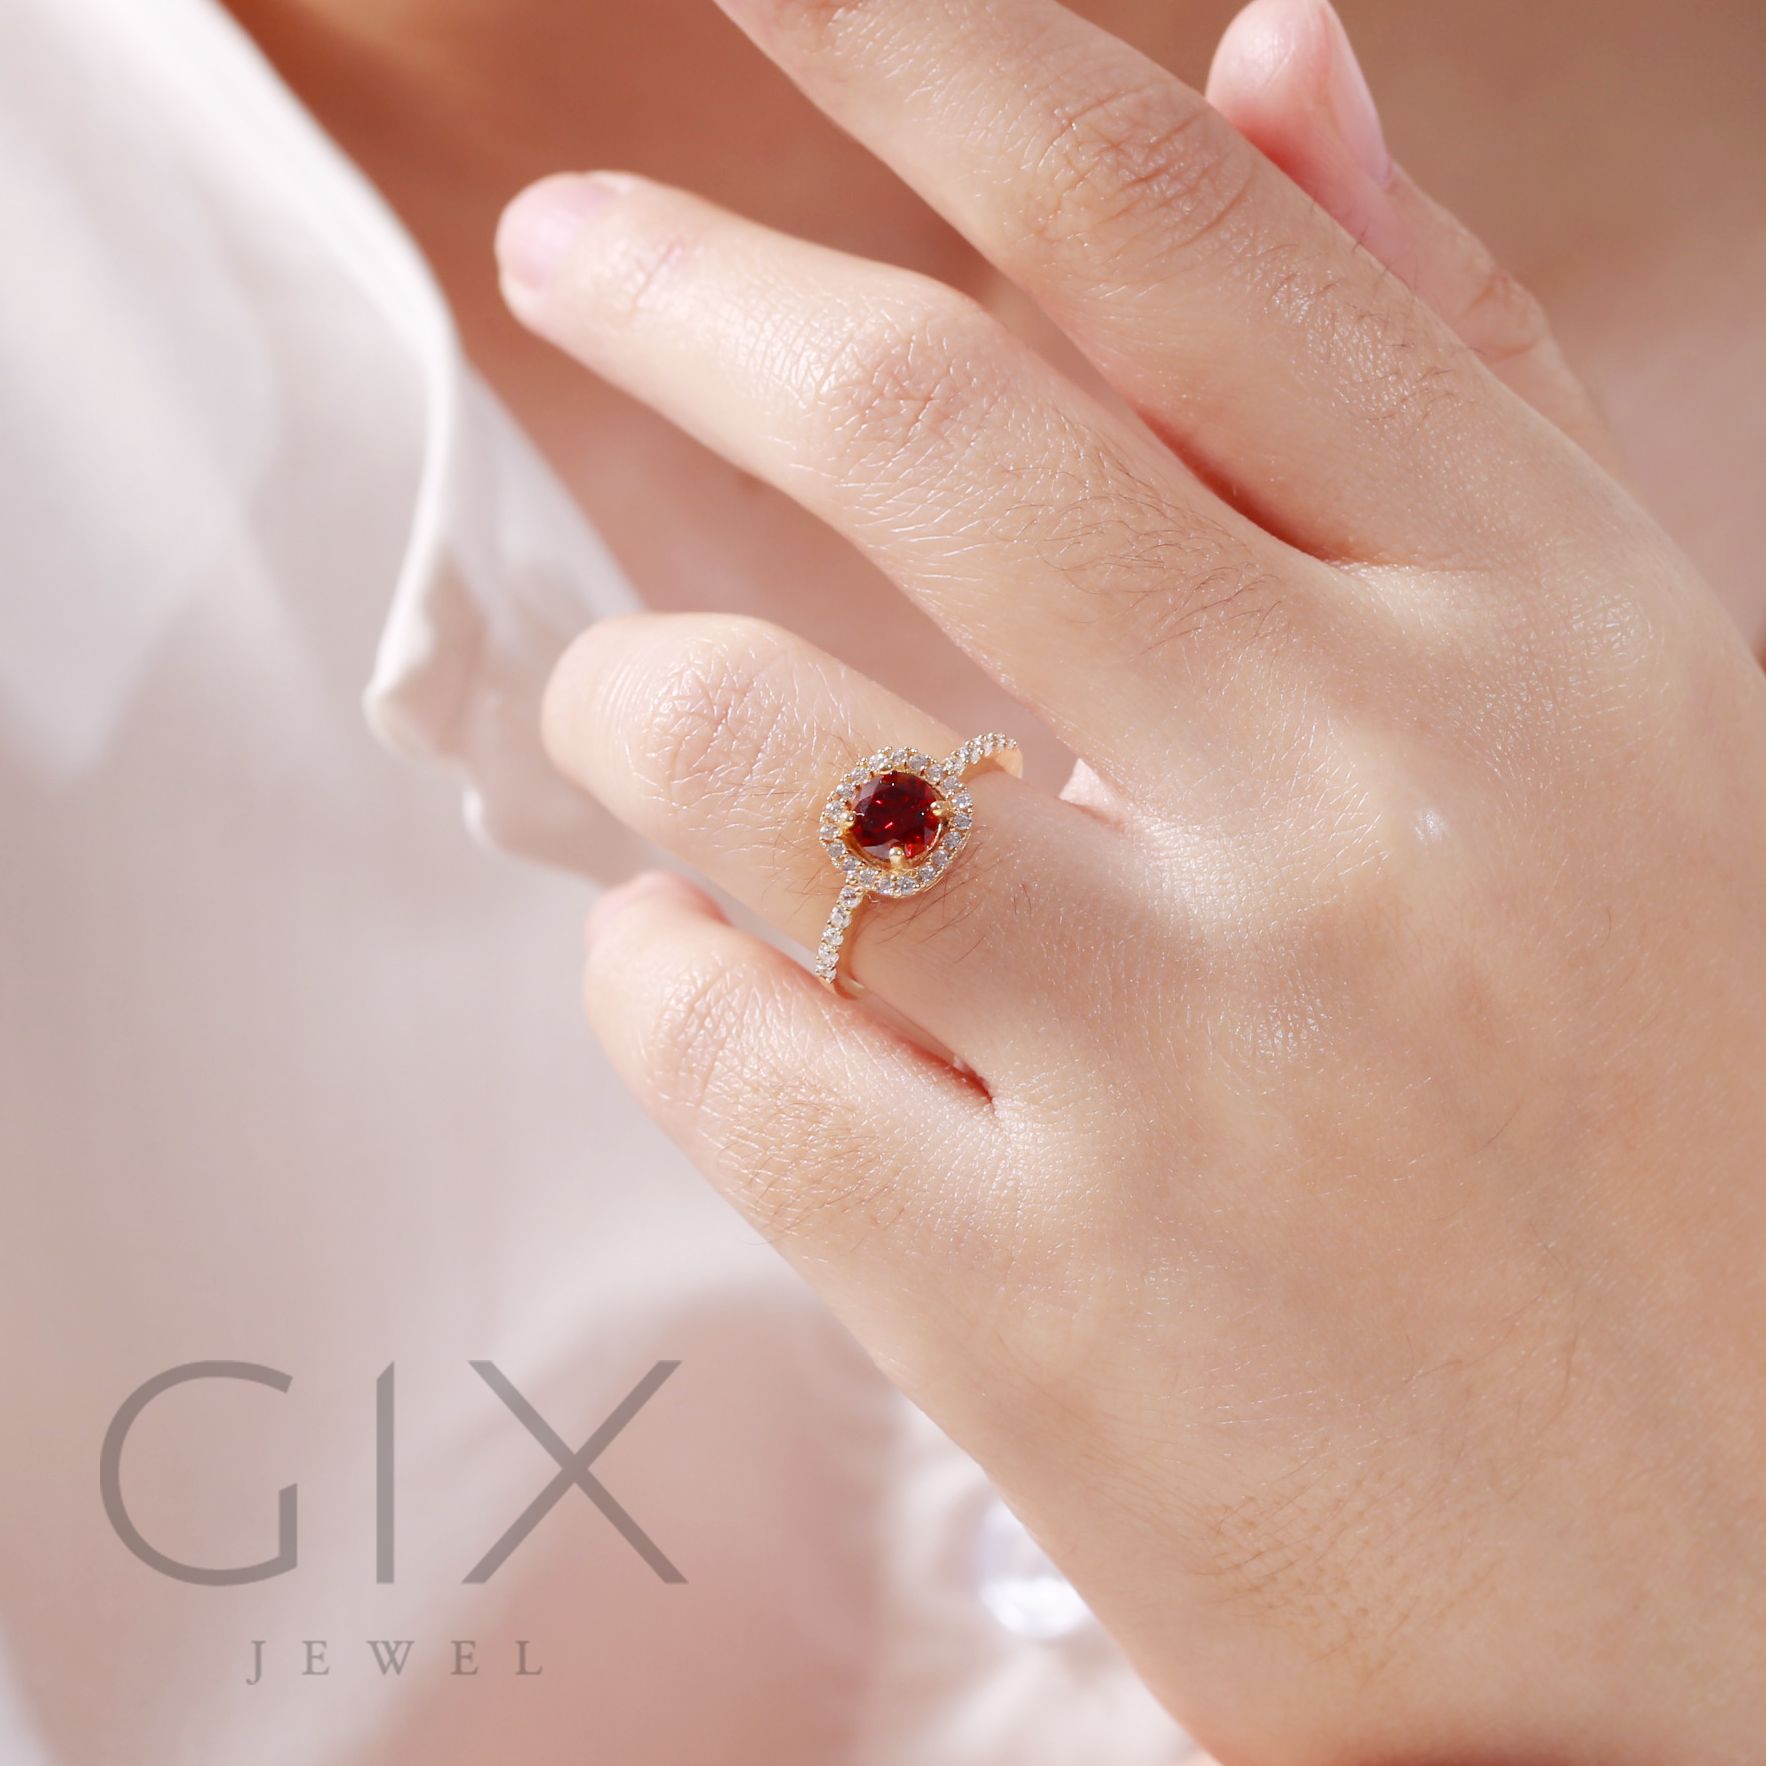  Nhẫn bạc đẹp cho nữ đính đá Cz đỏ cao cấp tphcm Gix Jewel SPGN14 